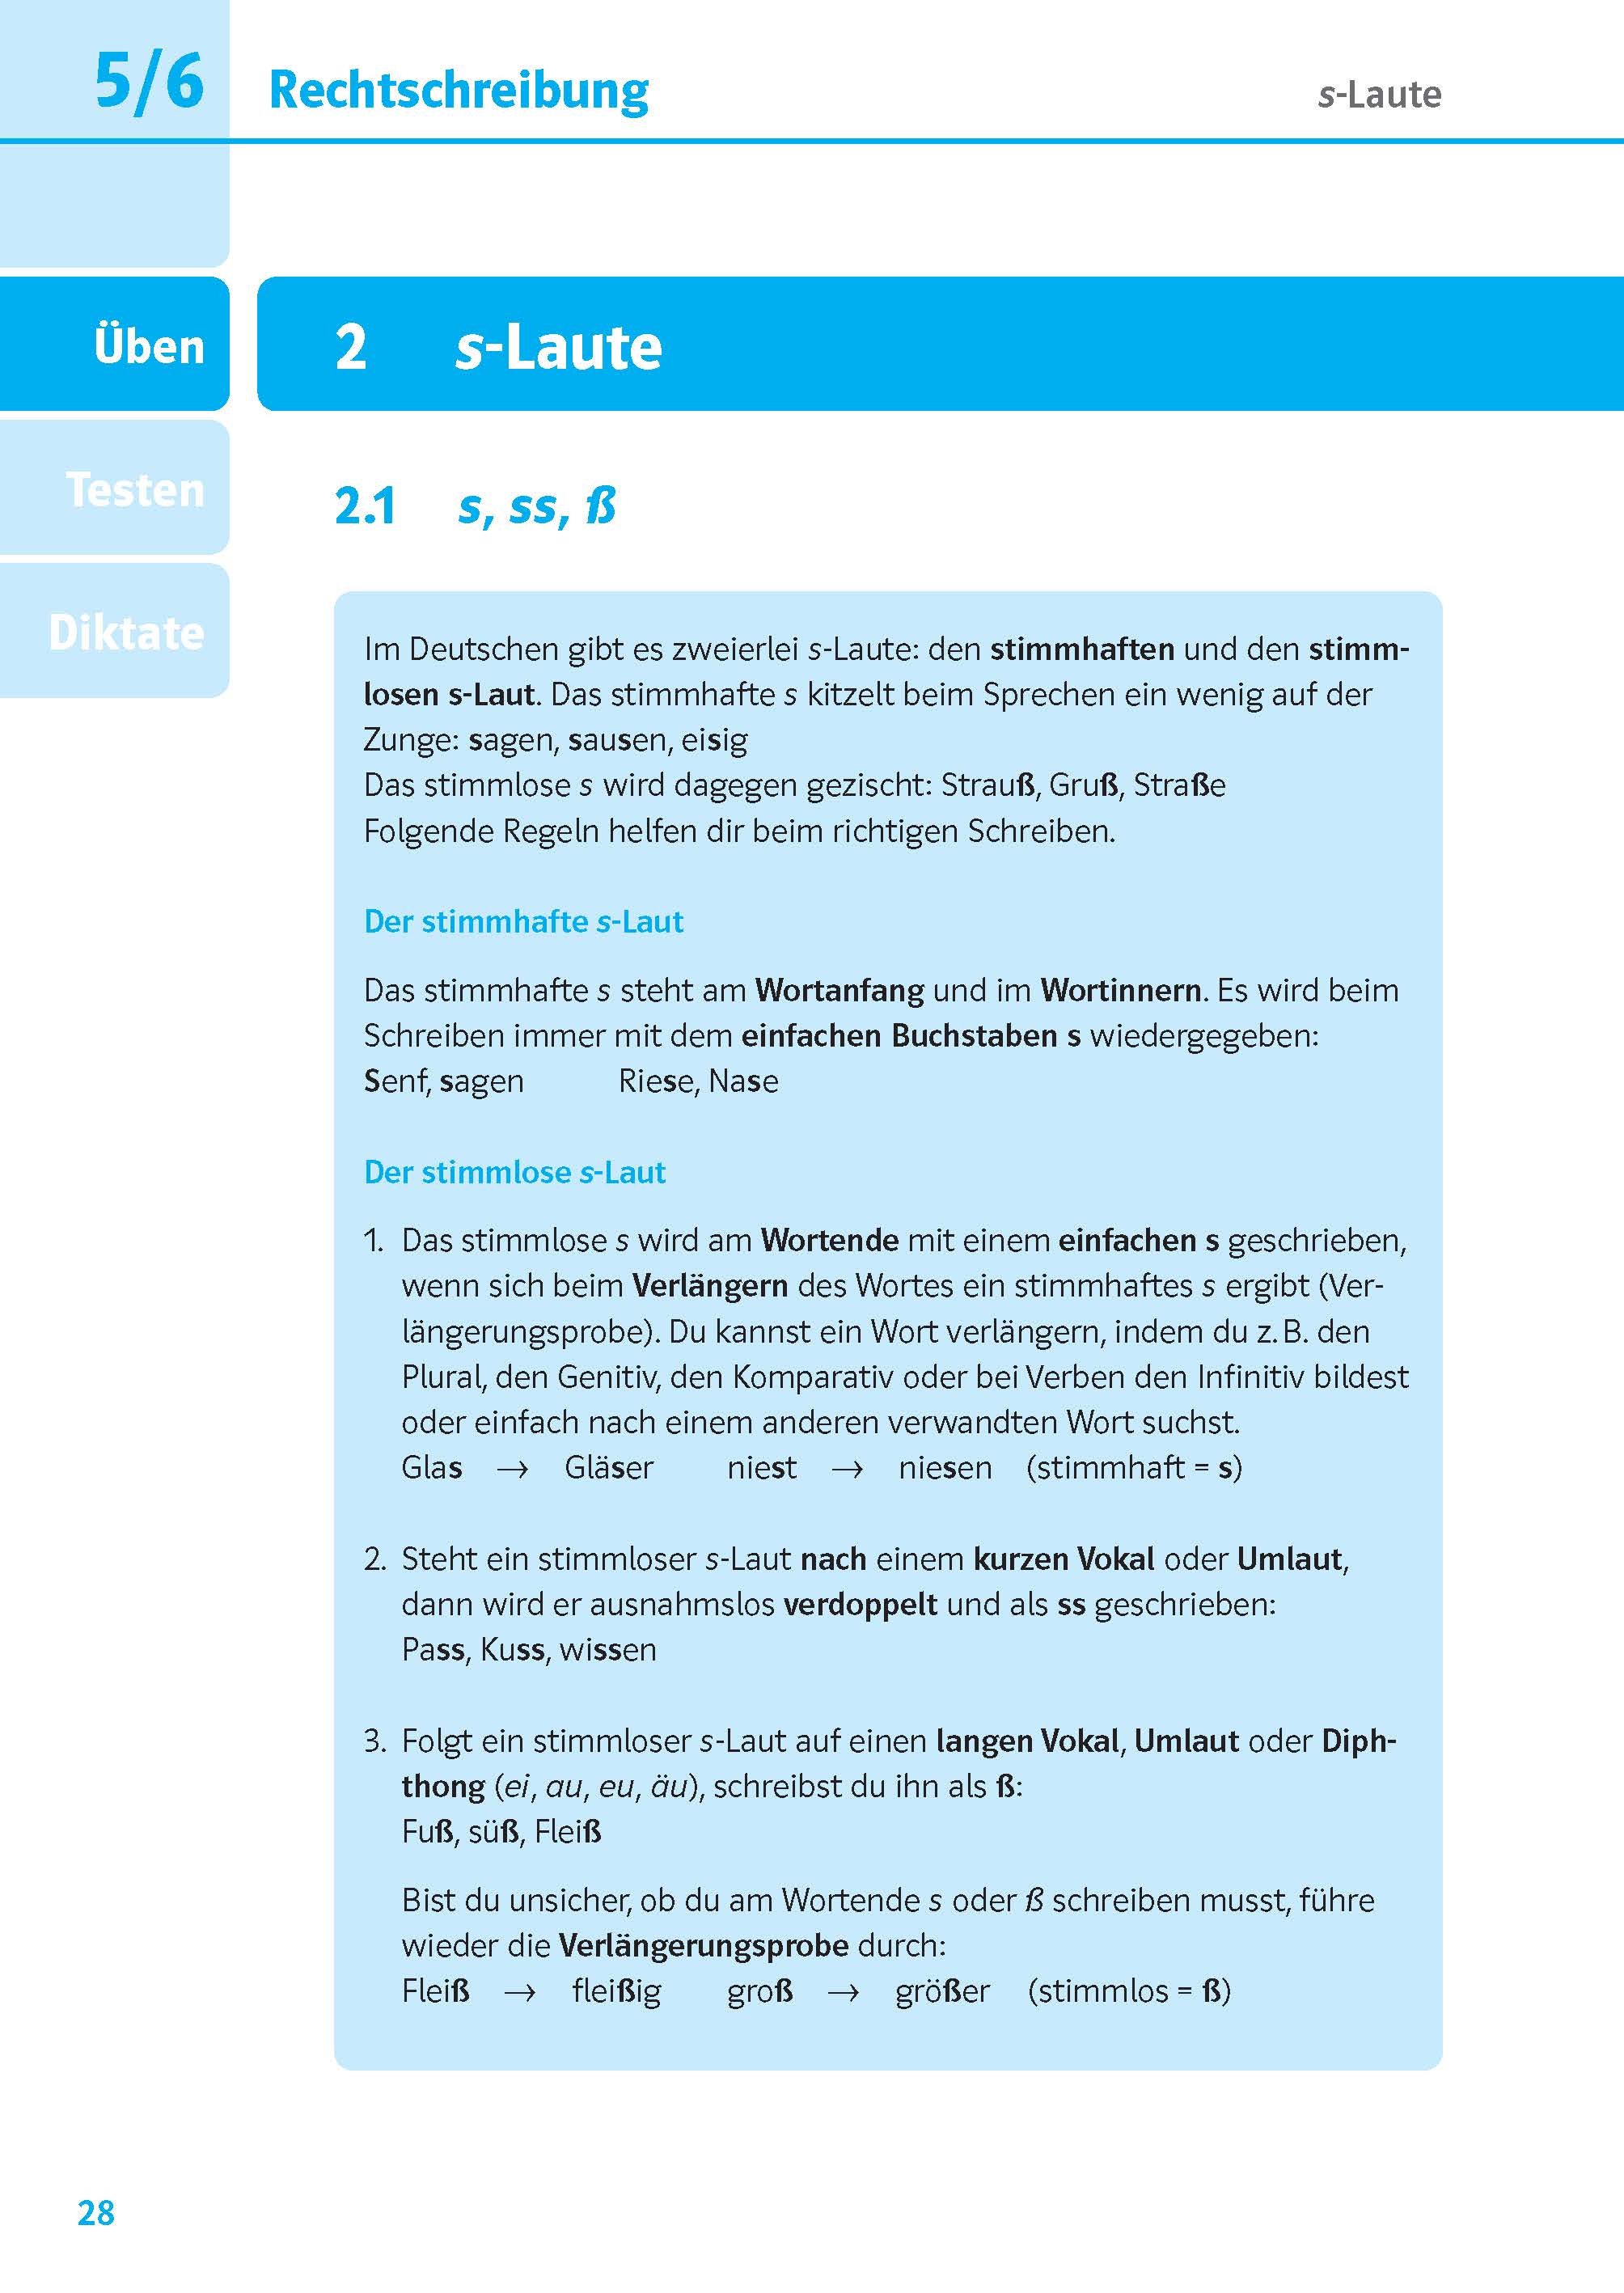 PONS Das große Übungsbuch Rechtschreibung und Zeichensetzung 5.-10. Klasse